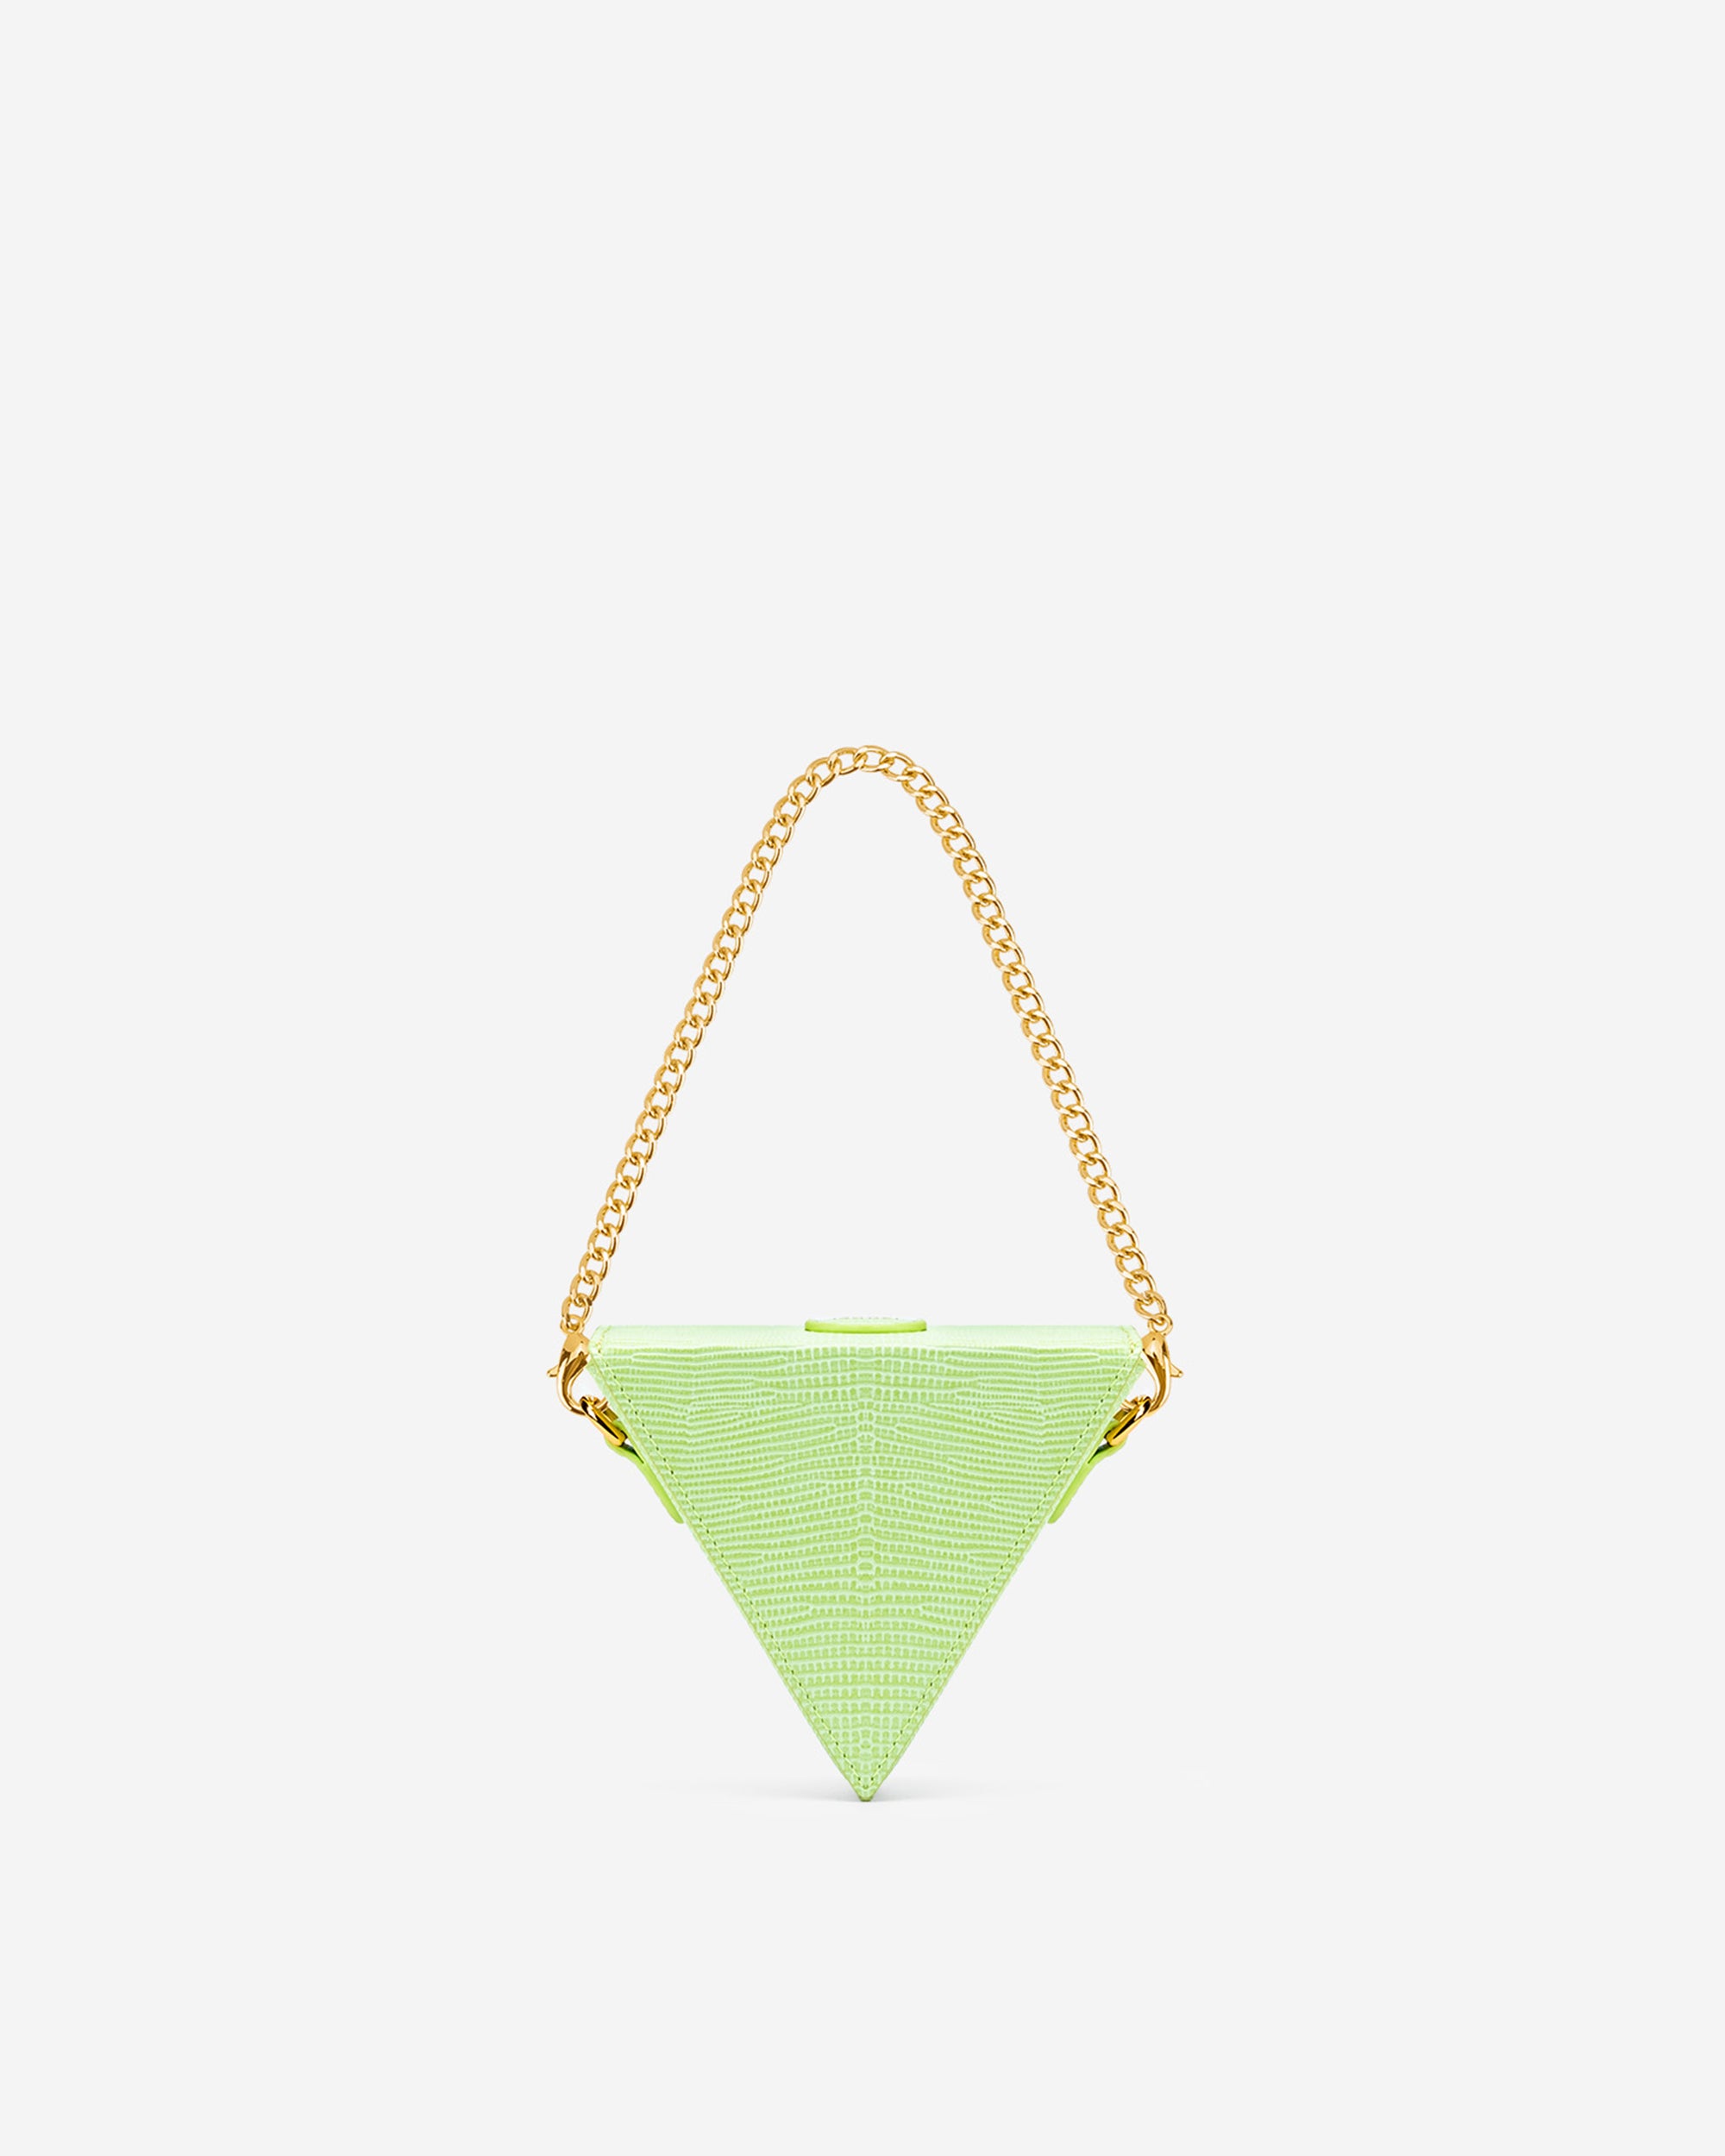 Triangle 迷你盒子包 - 檸檬綠色蜥蜴紋